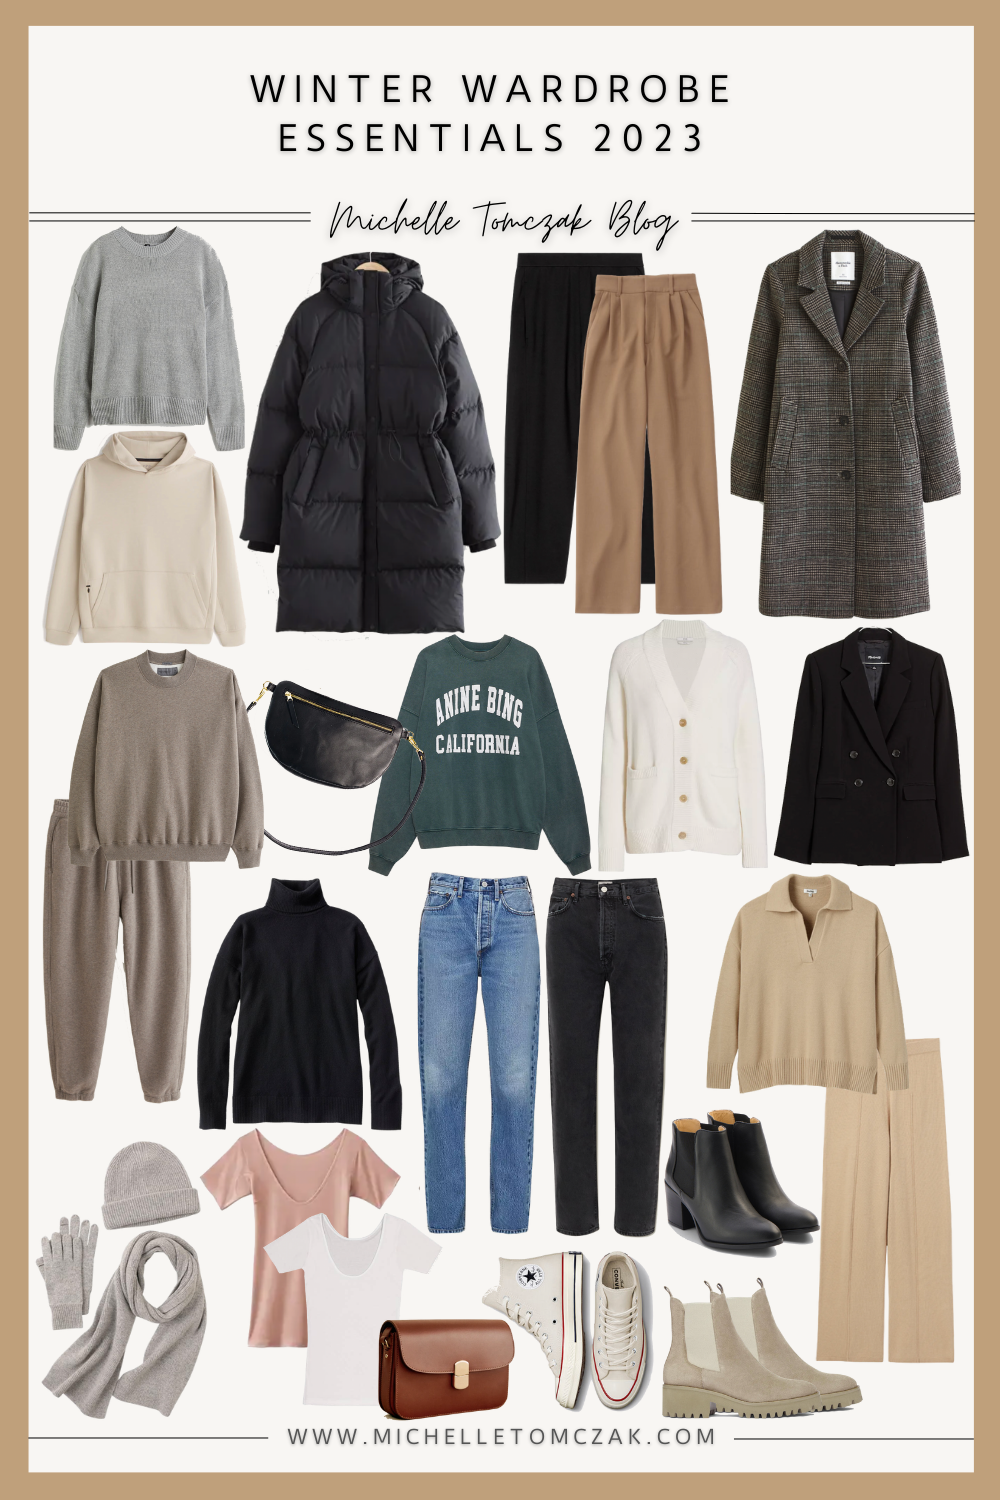 Winter Wardrobe Essentials 2023 - Michelle Tomczak